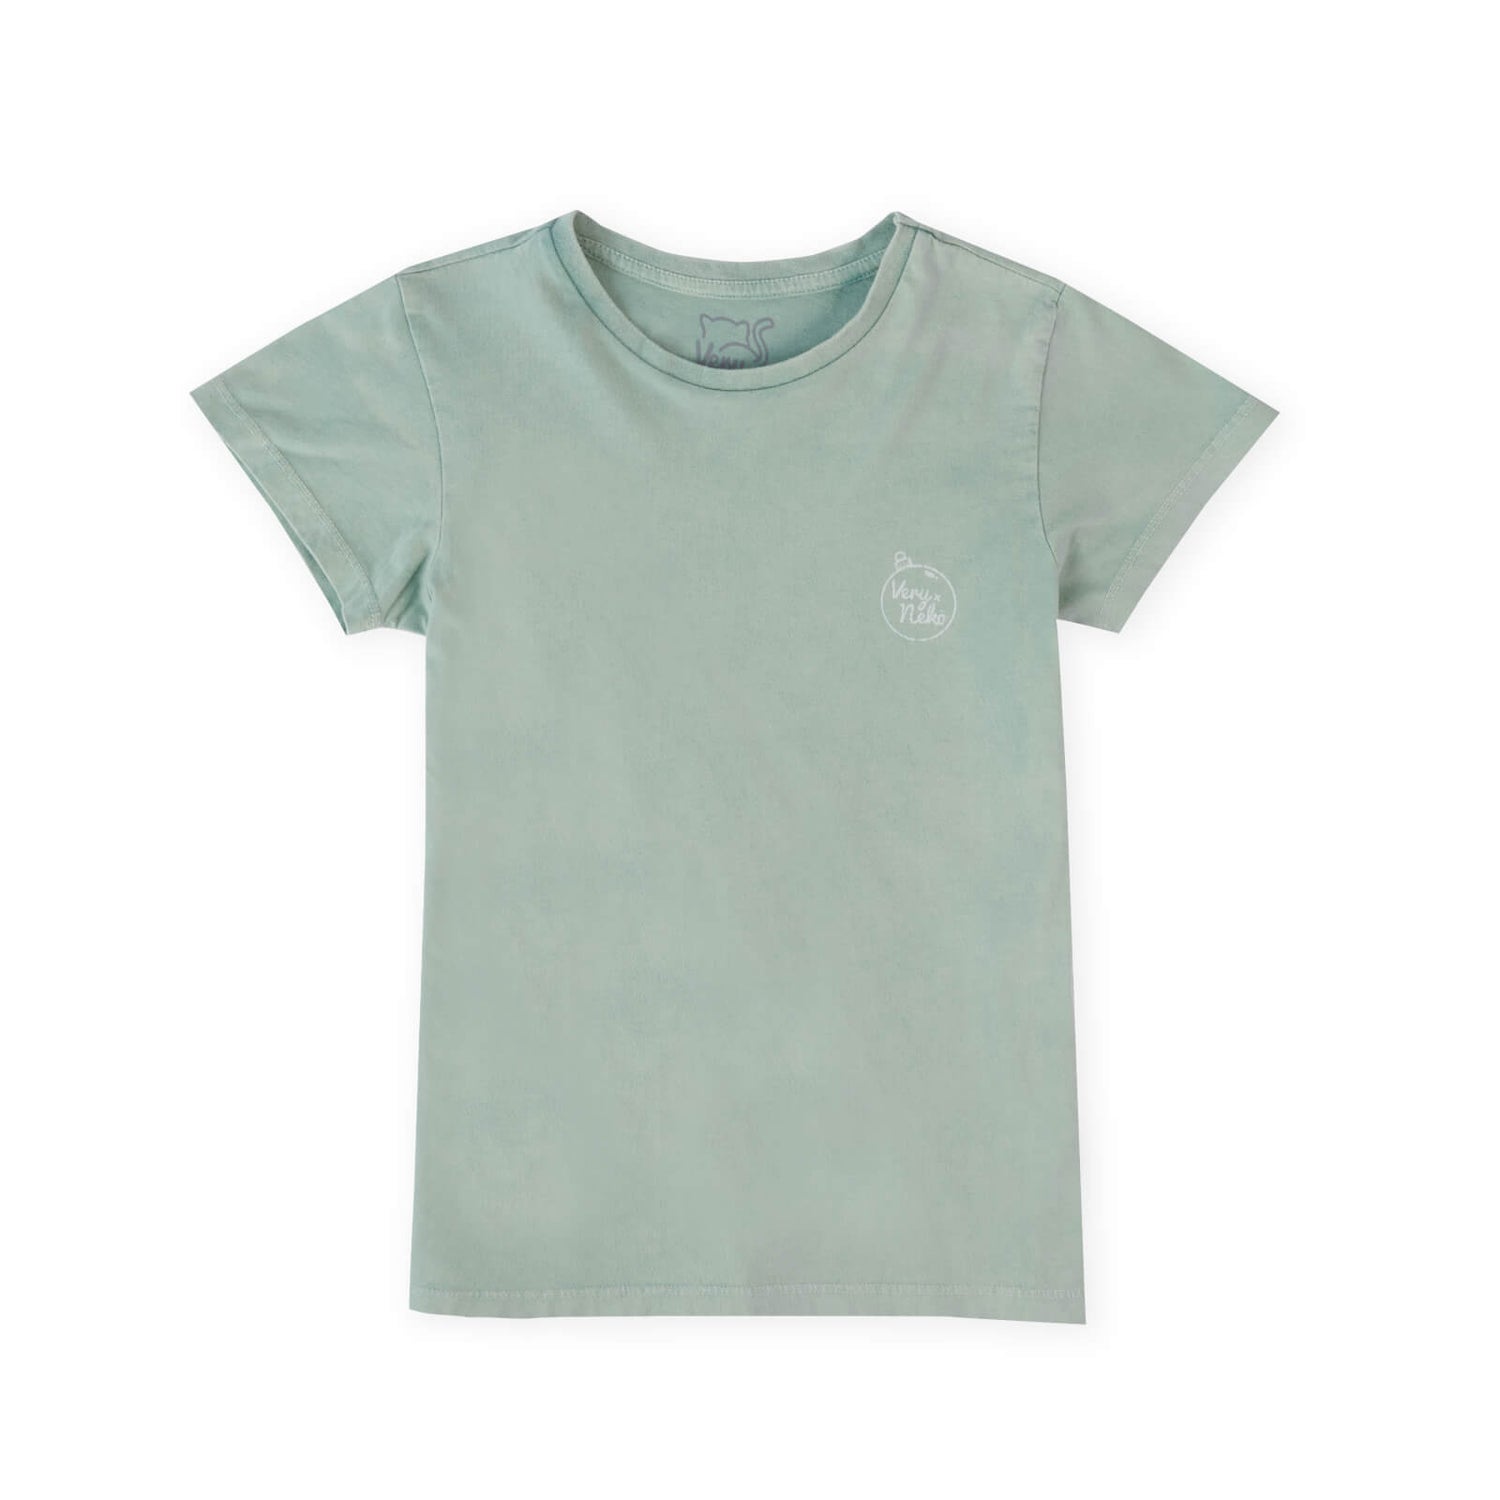 Happy Pawmas Kids' T-Shirt - Mint Acid Wash